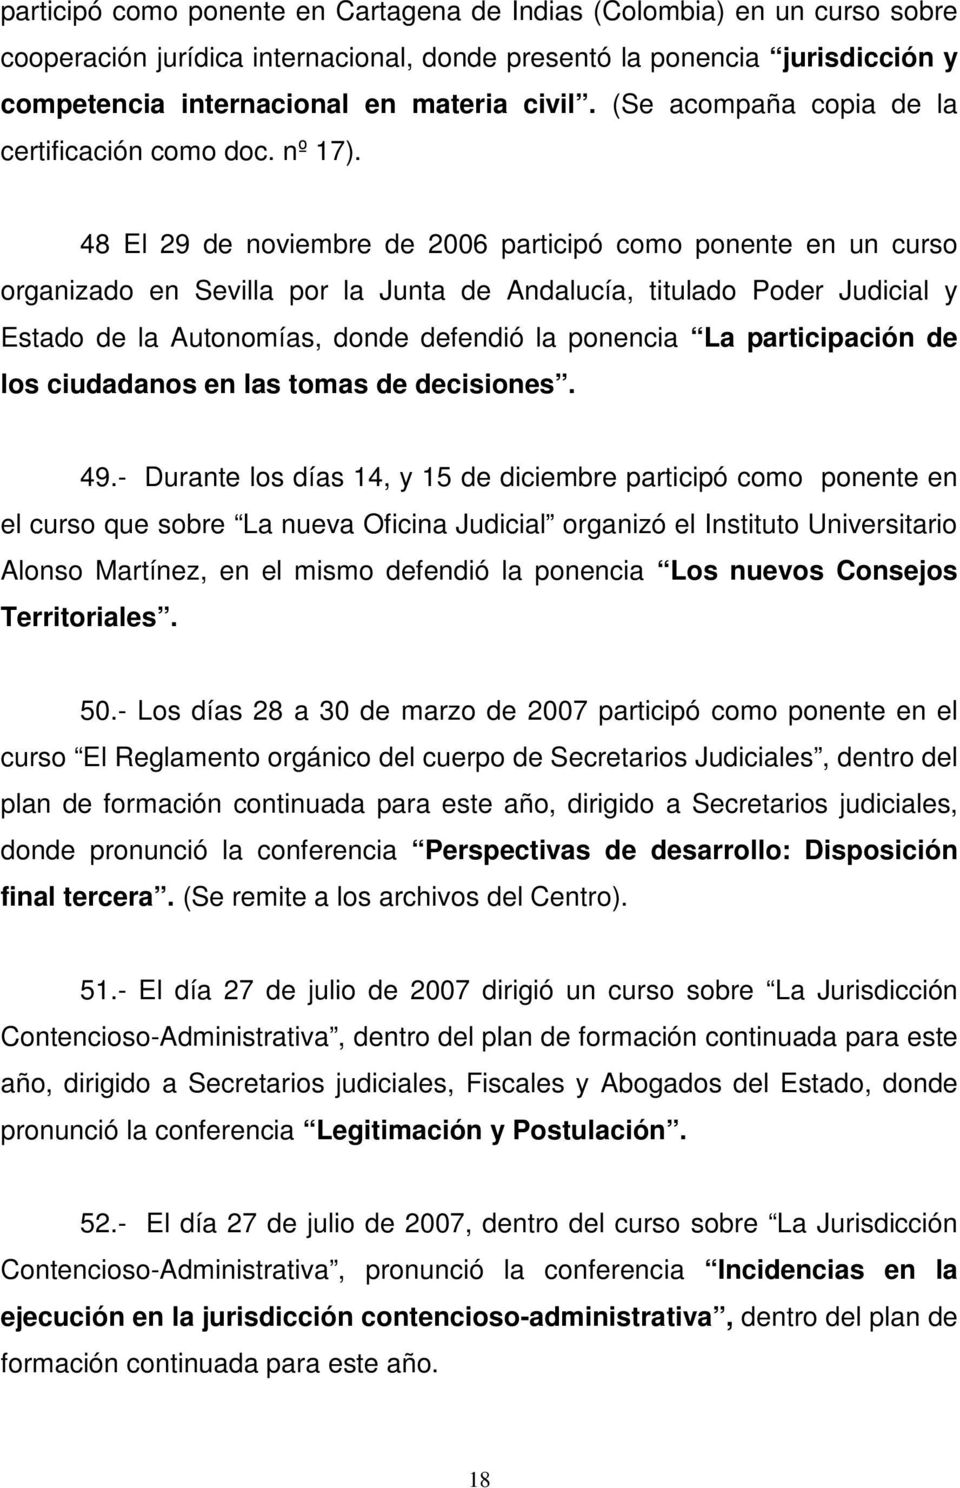 48 El 29 de noviembre de 2006 participó como ponente en un curso organizado en Sevilla por la Junta de Andalucía, titulado Poder Judicial y Estado de la Autonomías, donde defendió la ponencia La